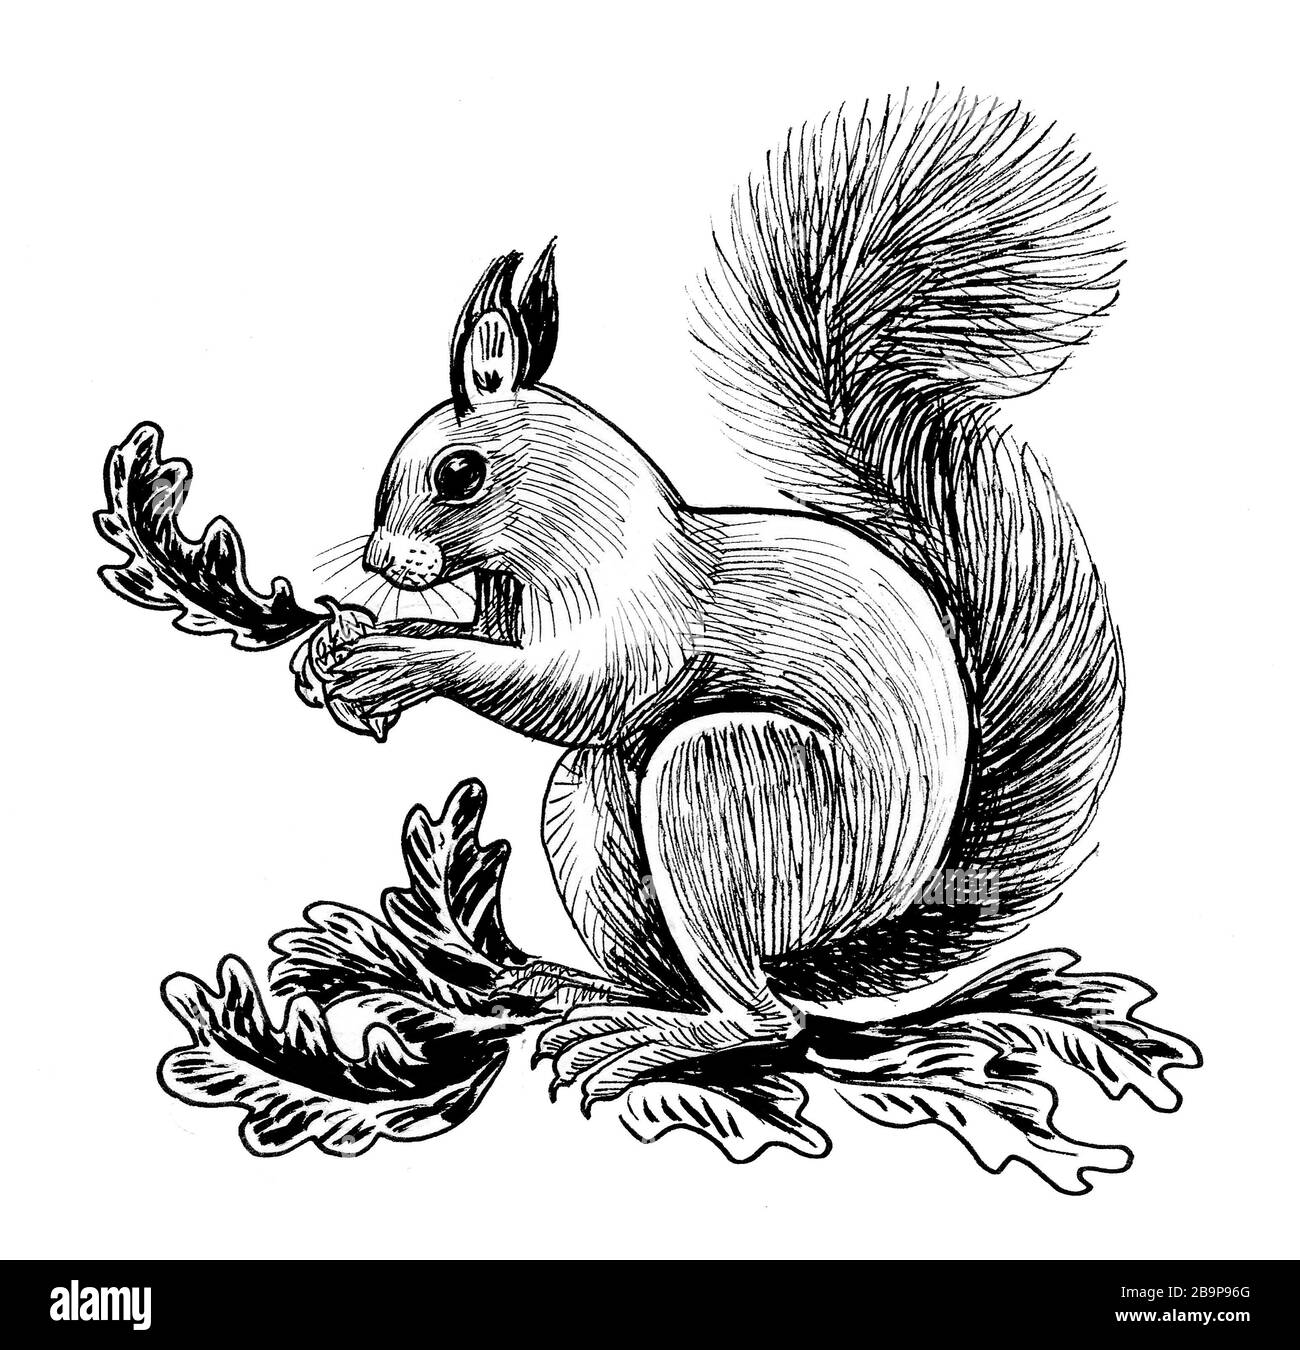 Eichhörnchen Tier essen Eicheln. Tinte schwarz-weiß Zeichnung  Stockfotografie - Alamy